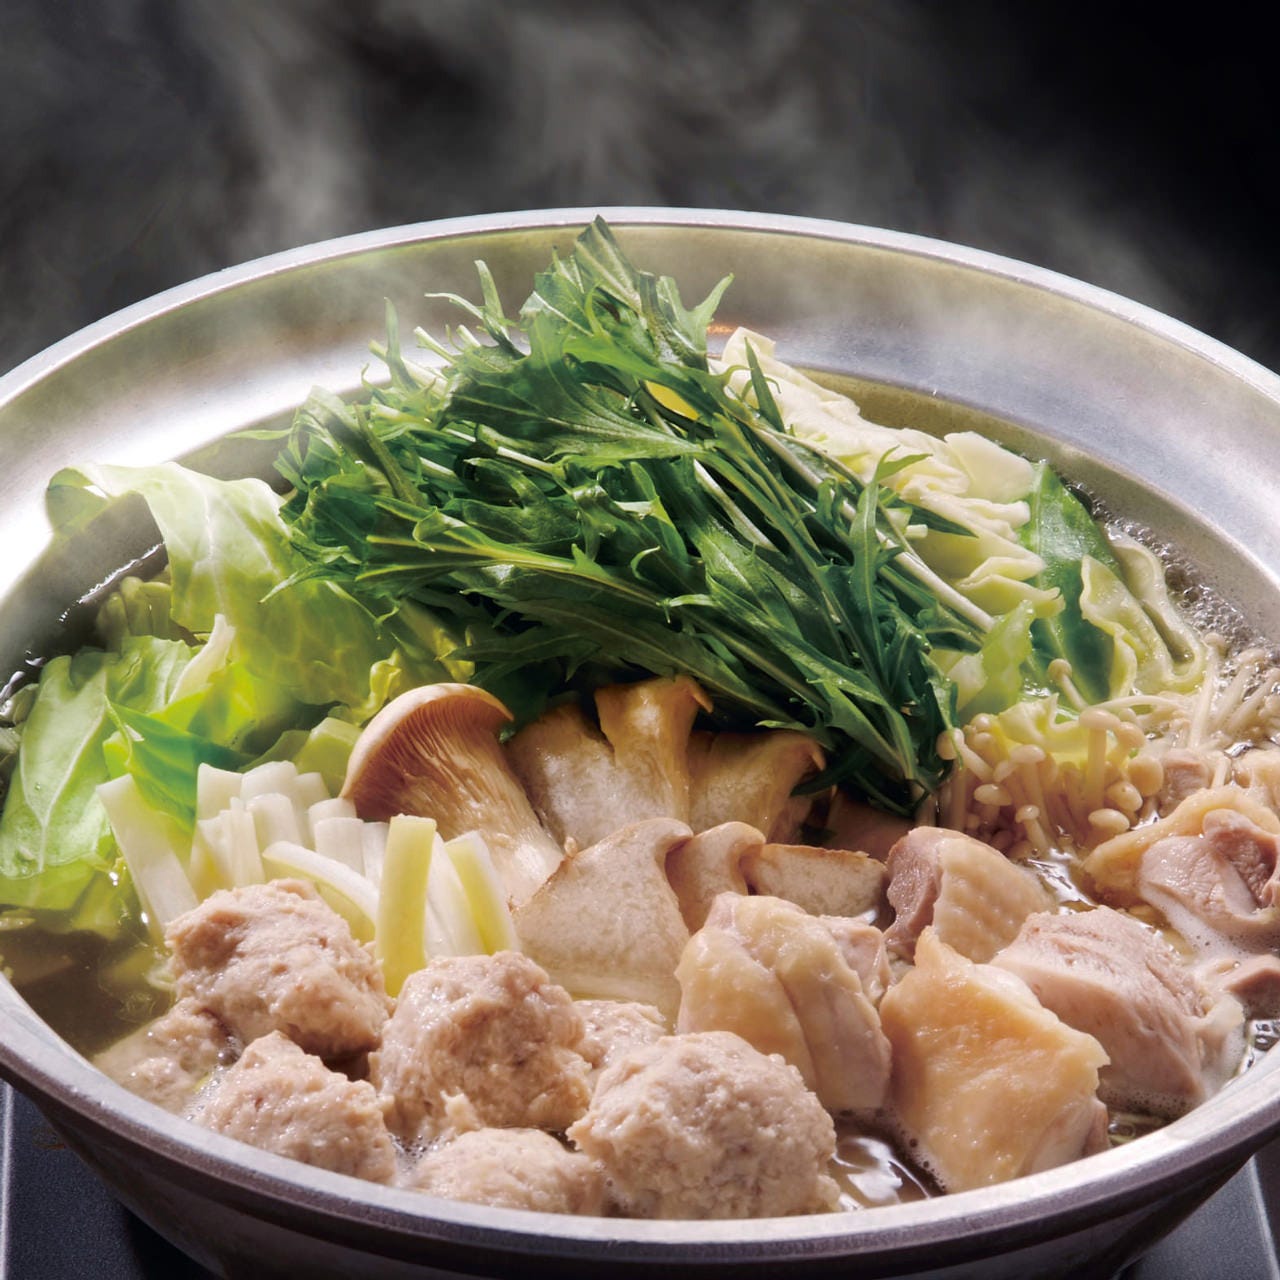 旨味溢れるスープと柔らかな鶏肉が絶品の水炊きコース